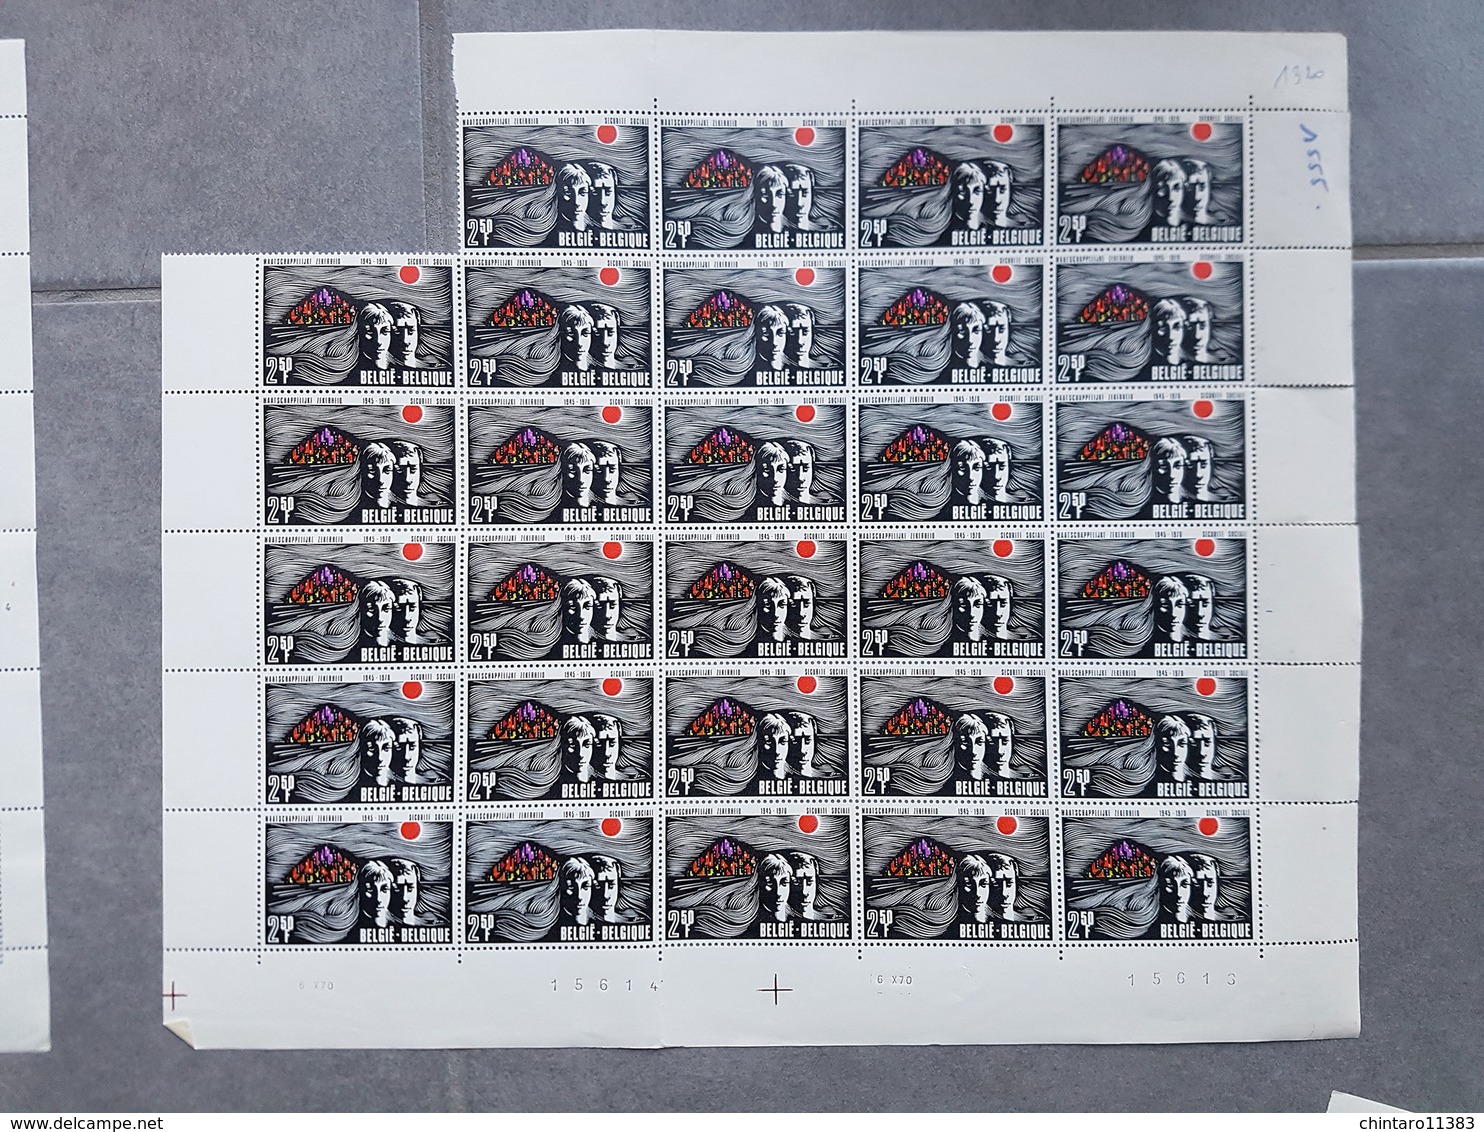 Lot feuilles complètes/incomplètes de timbres Belgique - Année 1970